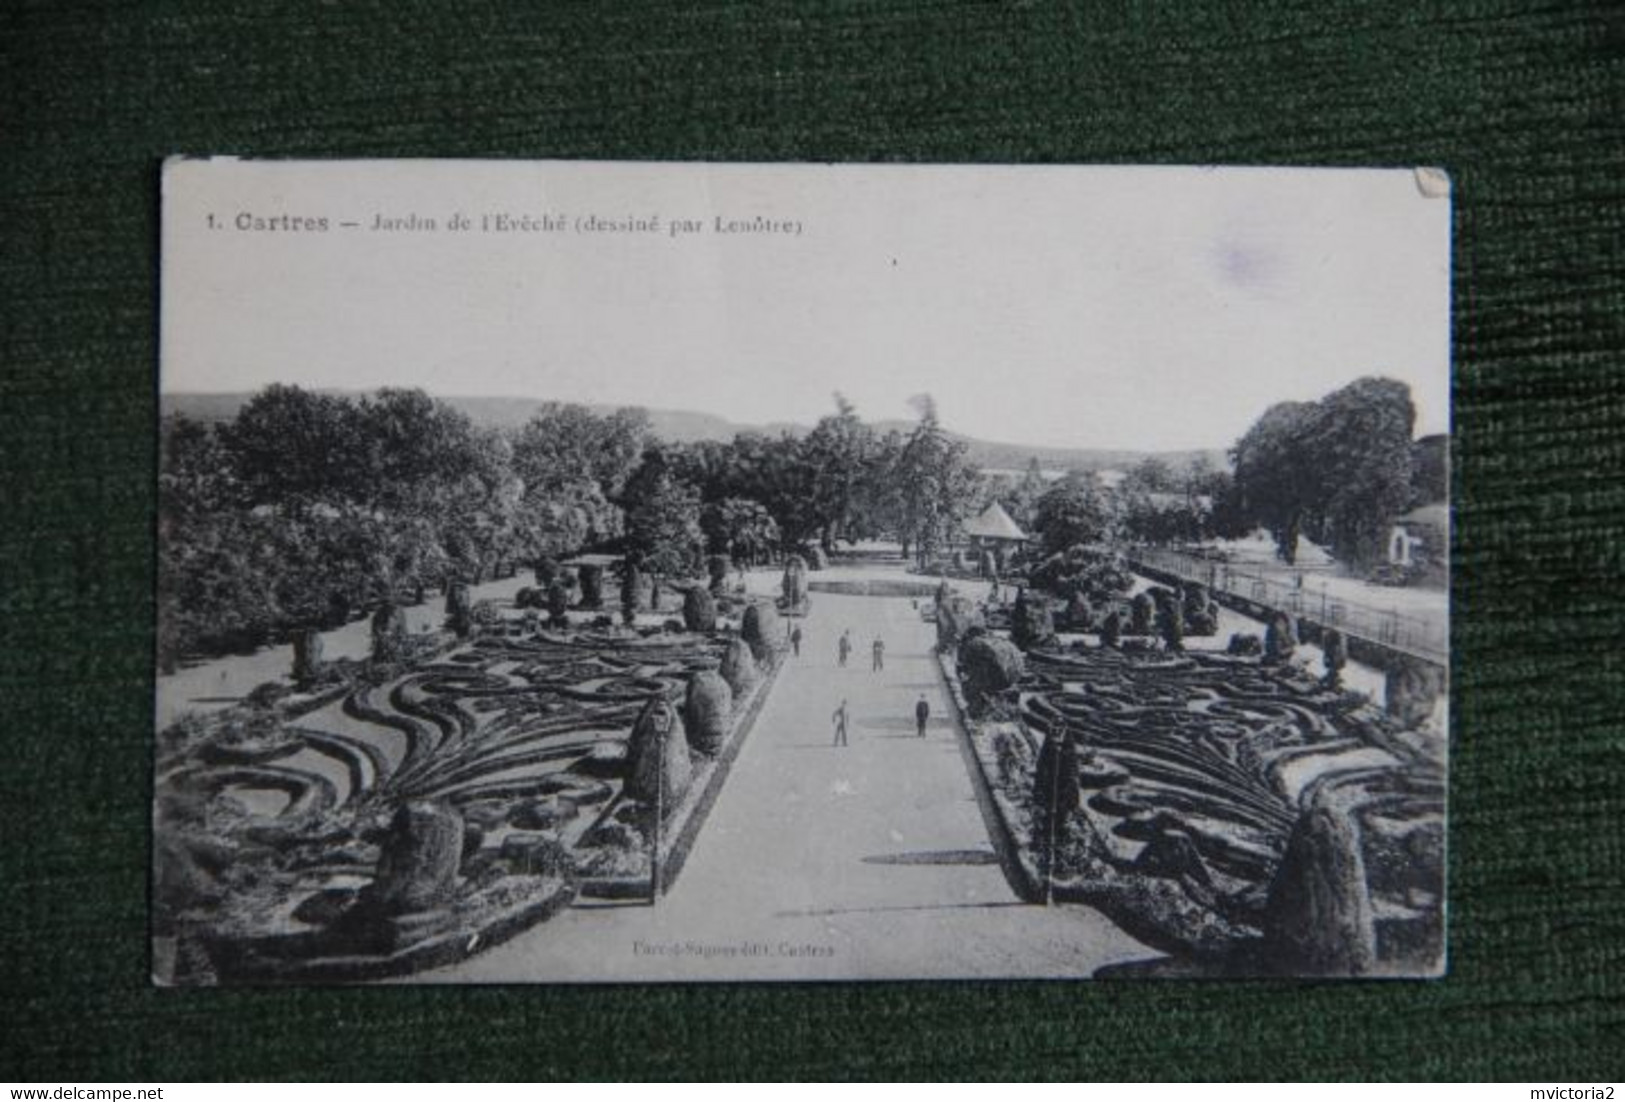 CASTRES - Jardins De L'évêché, Dessinés Par LENOTRE - Castres